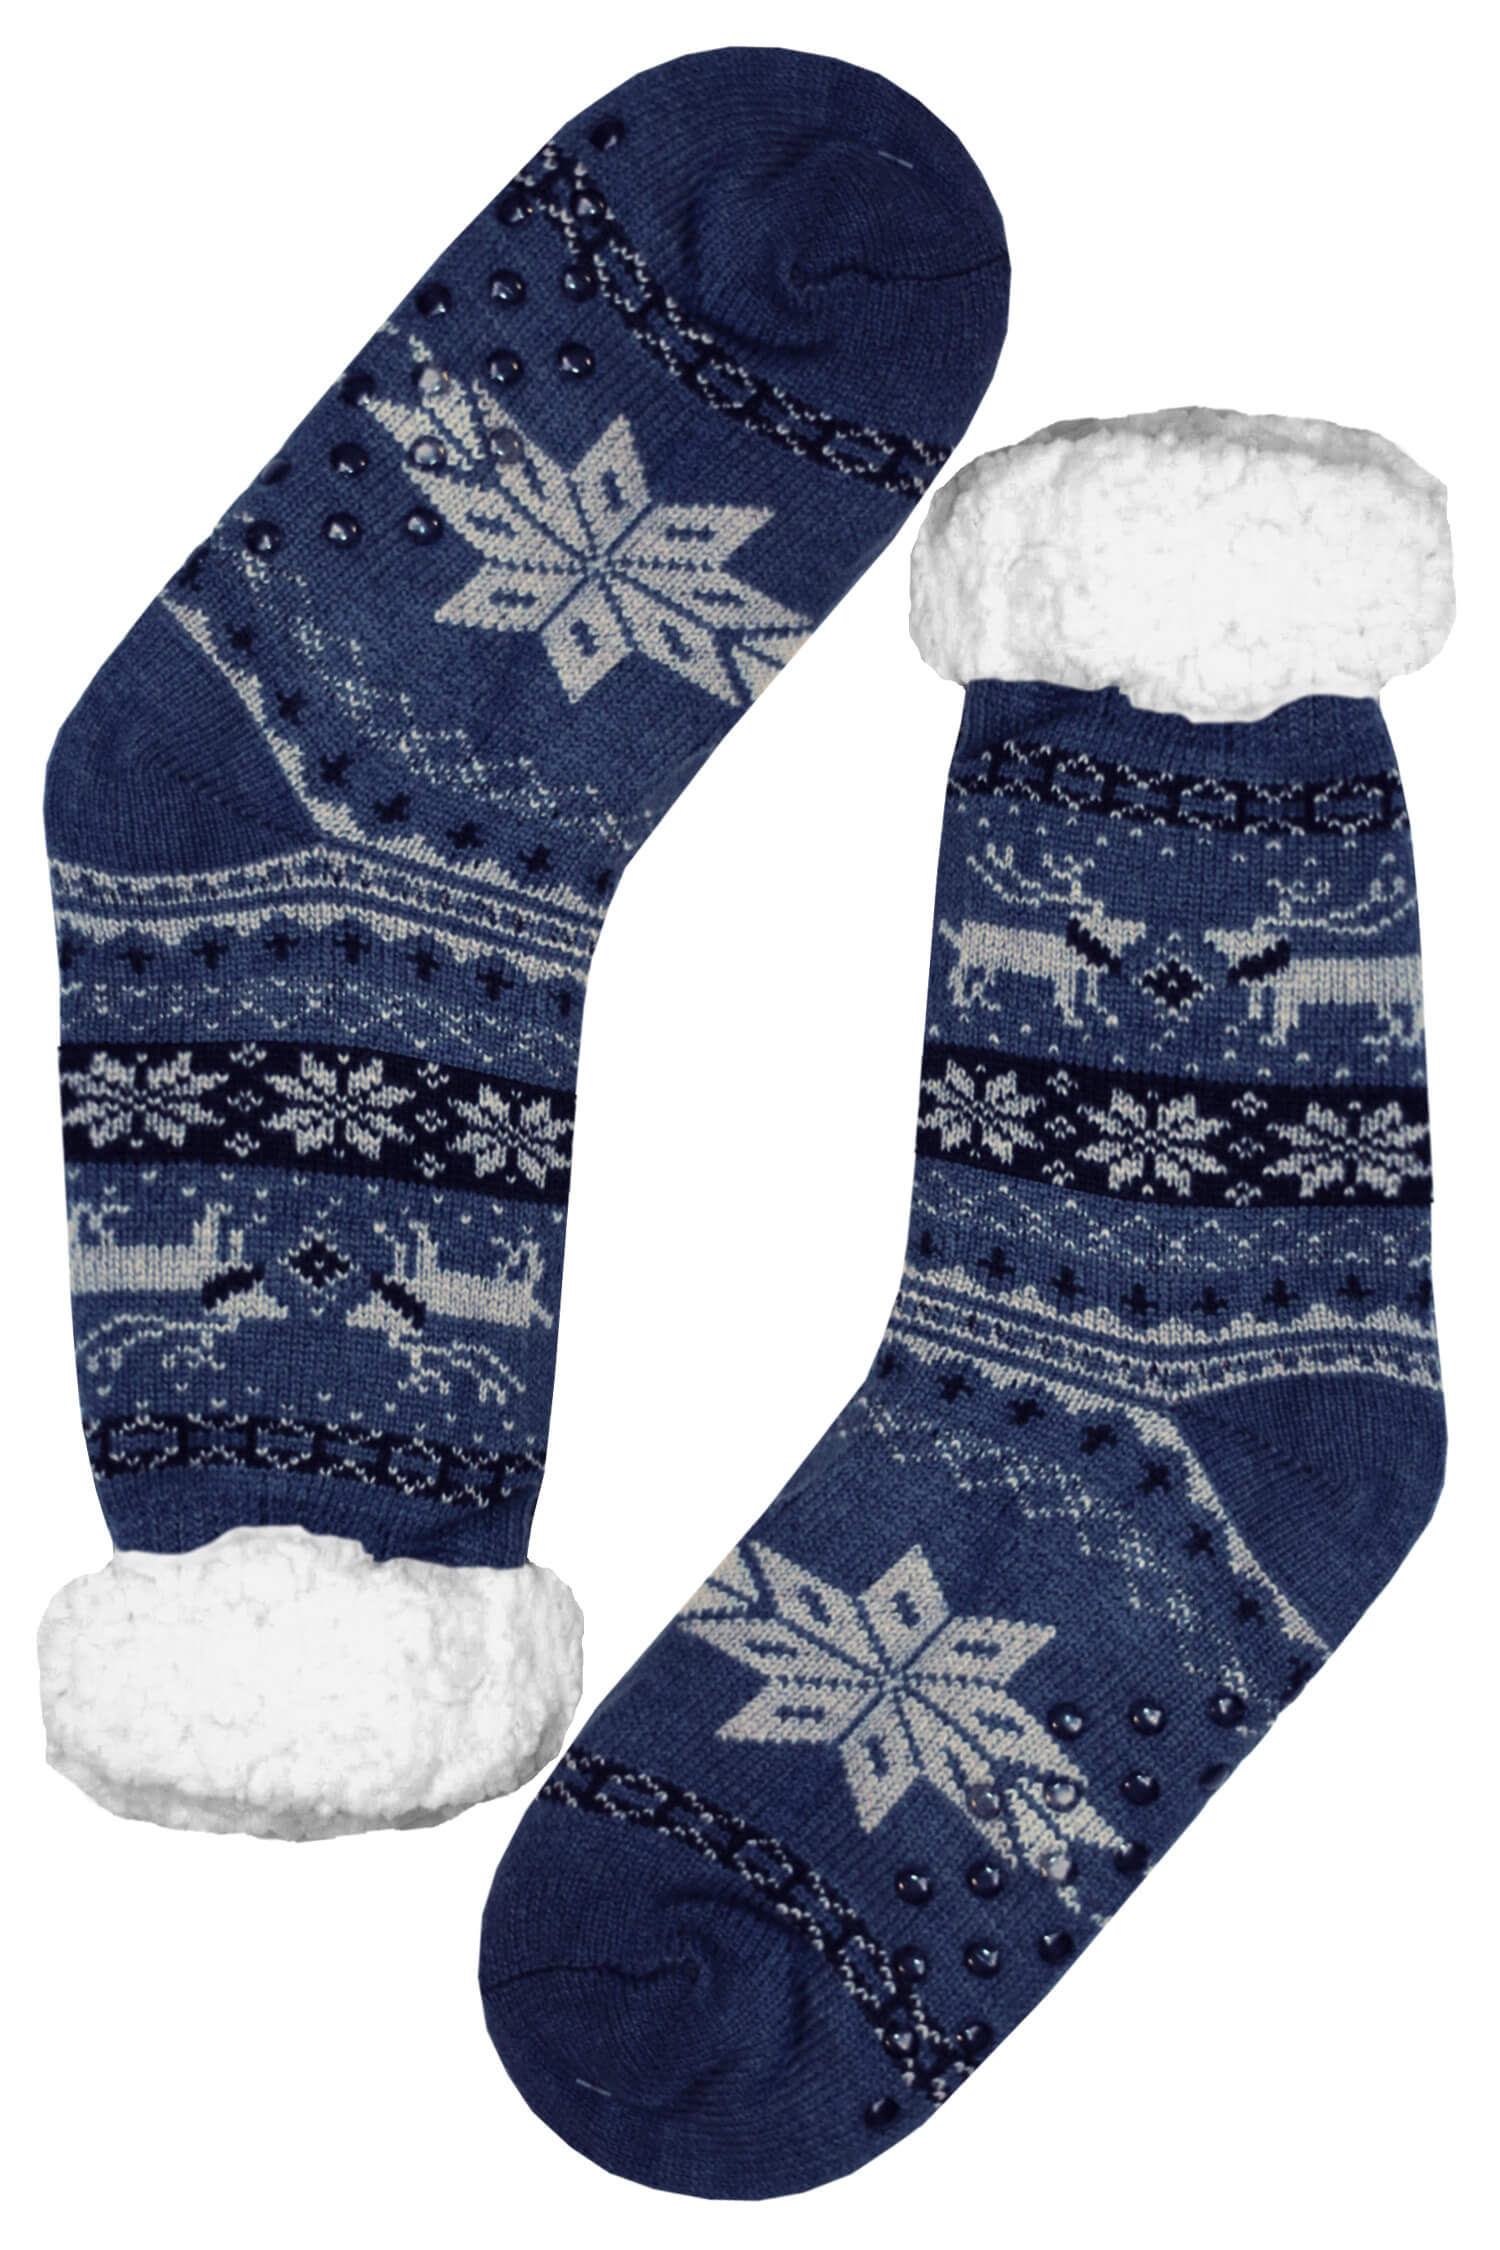 Polaros blue teplé ponožky s beránkem MC 112 39-42 šedomodrá